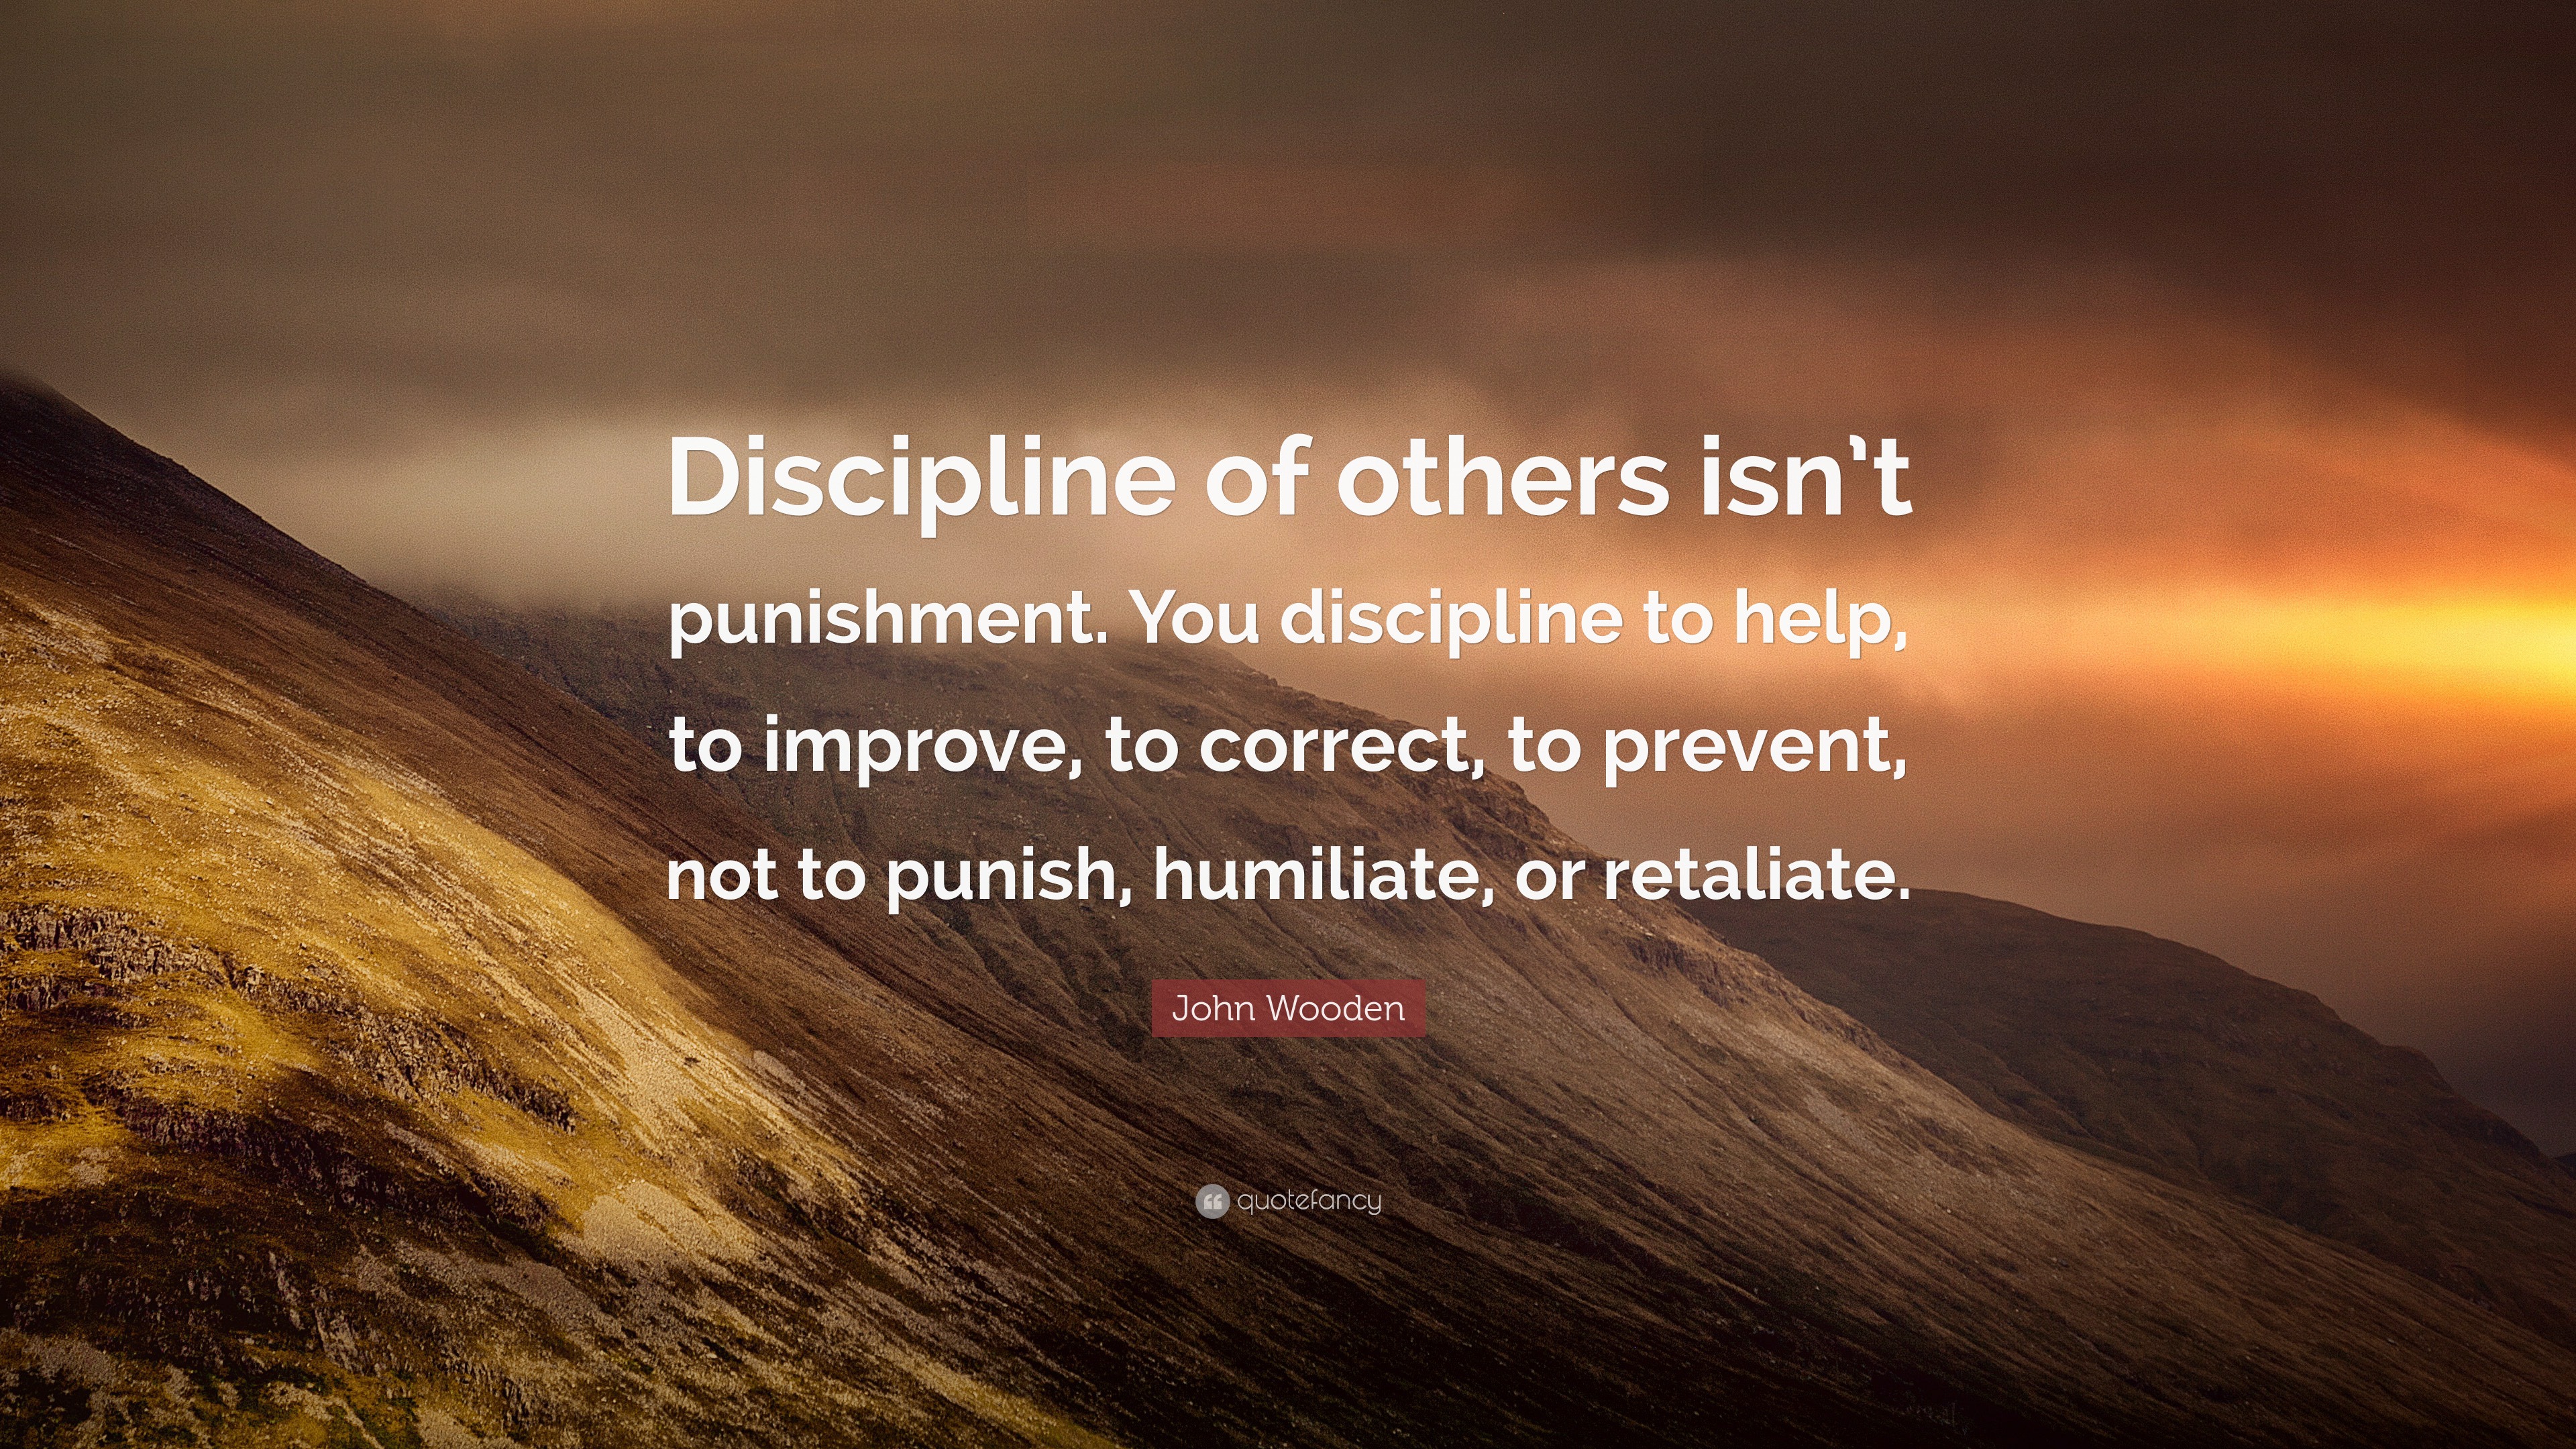 discipline and punishment quotes